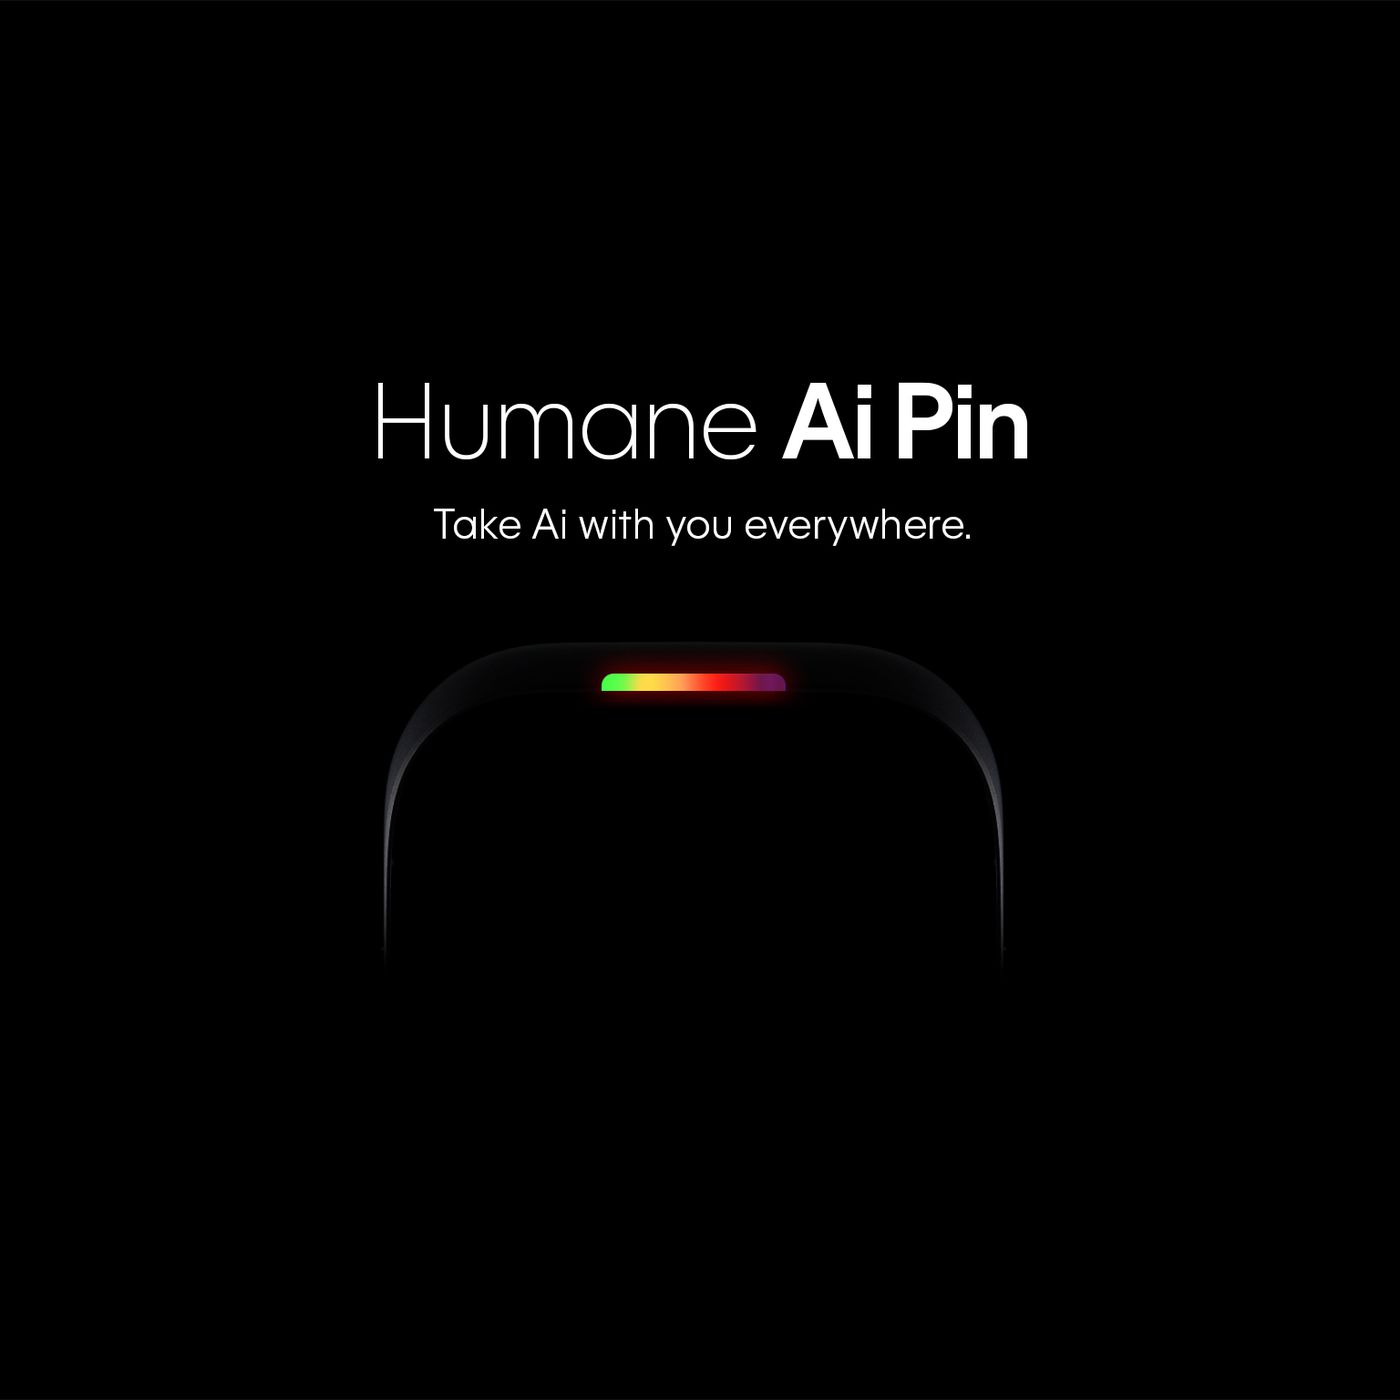 The Humane AI Pin